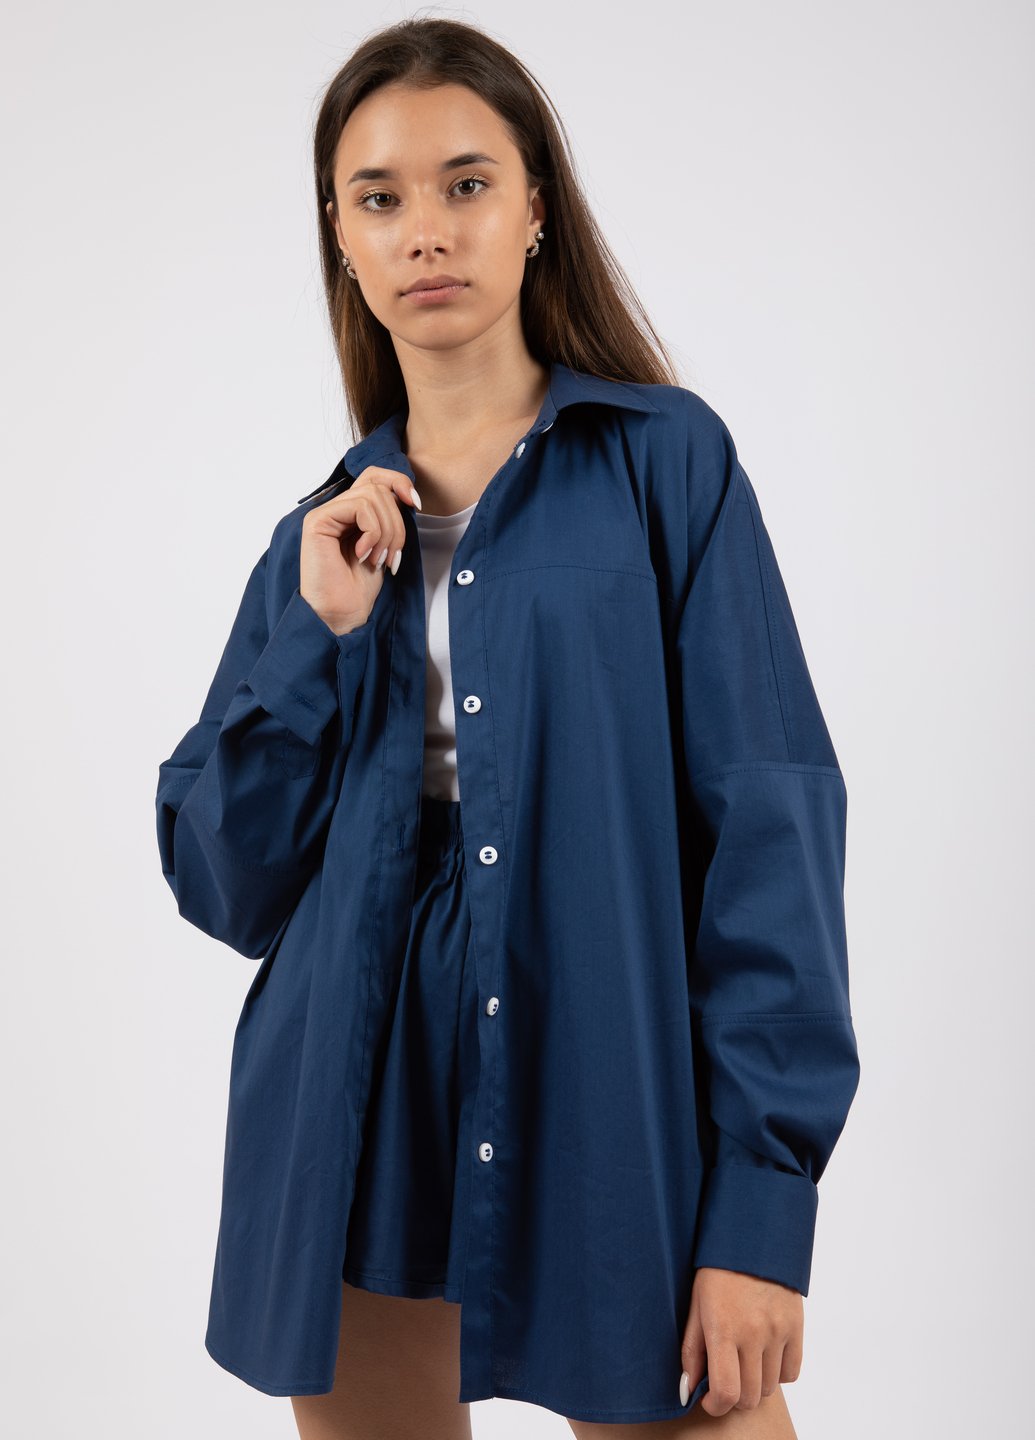 Купить Оверсайз хлопковая рубашка женская Merlini Белиз 200000036 - Синий, 42-44 в интернет-магазине